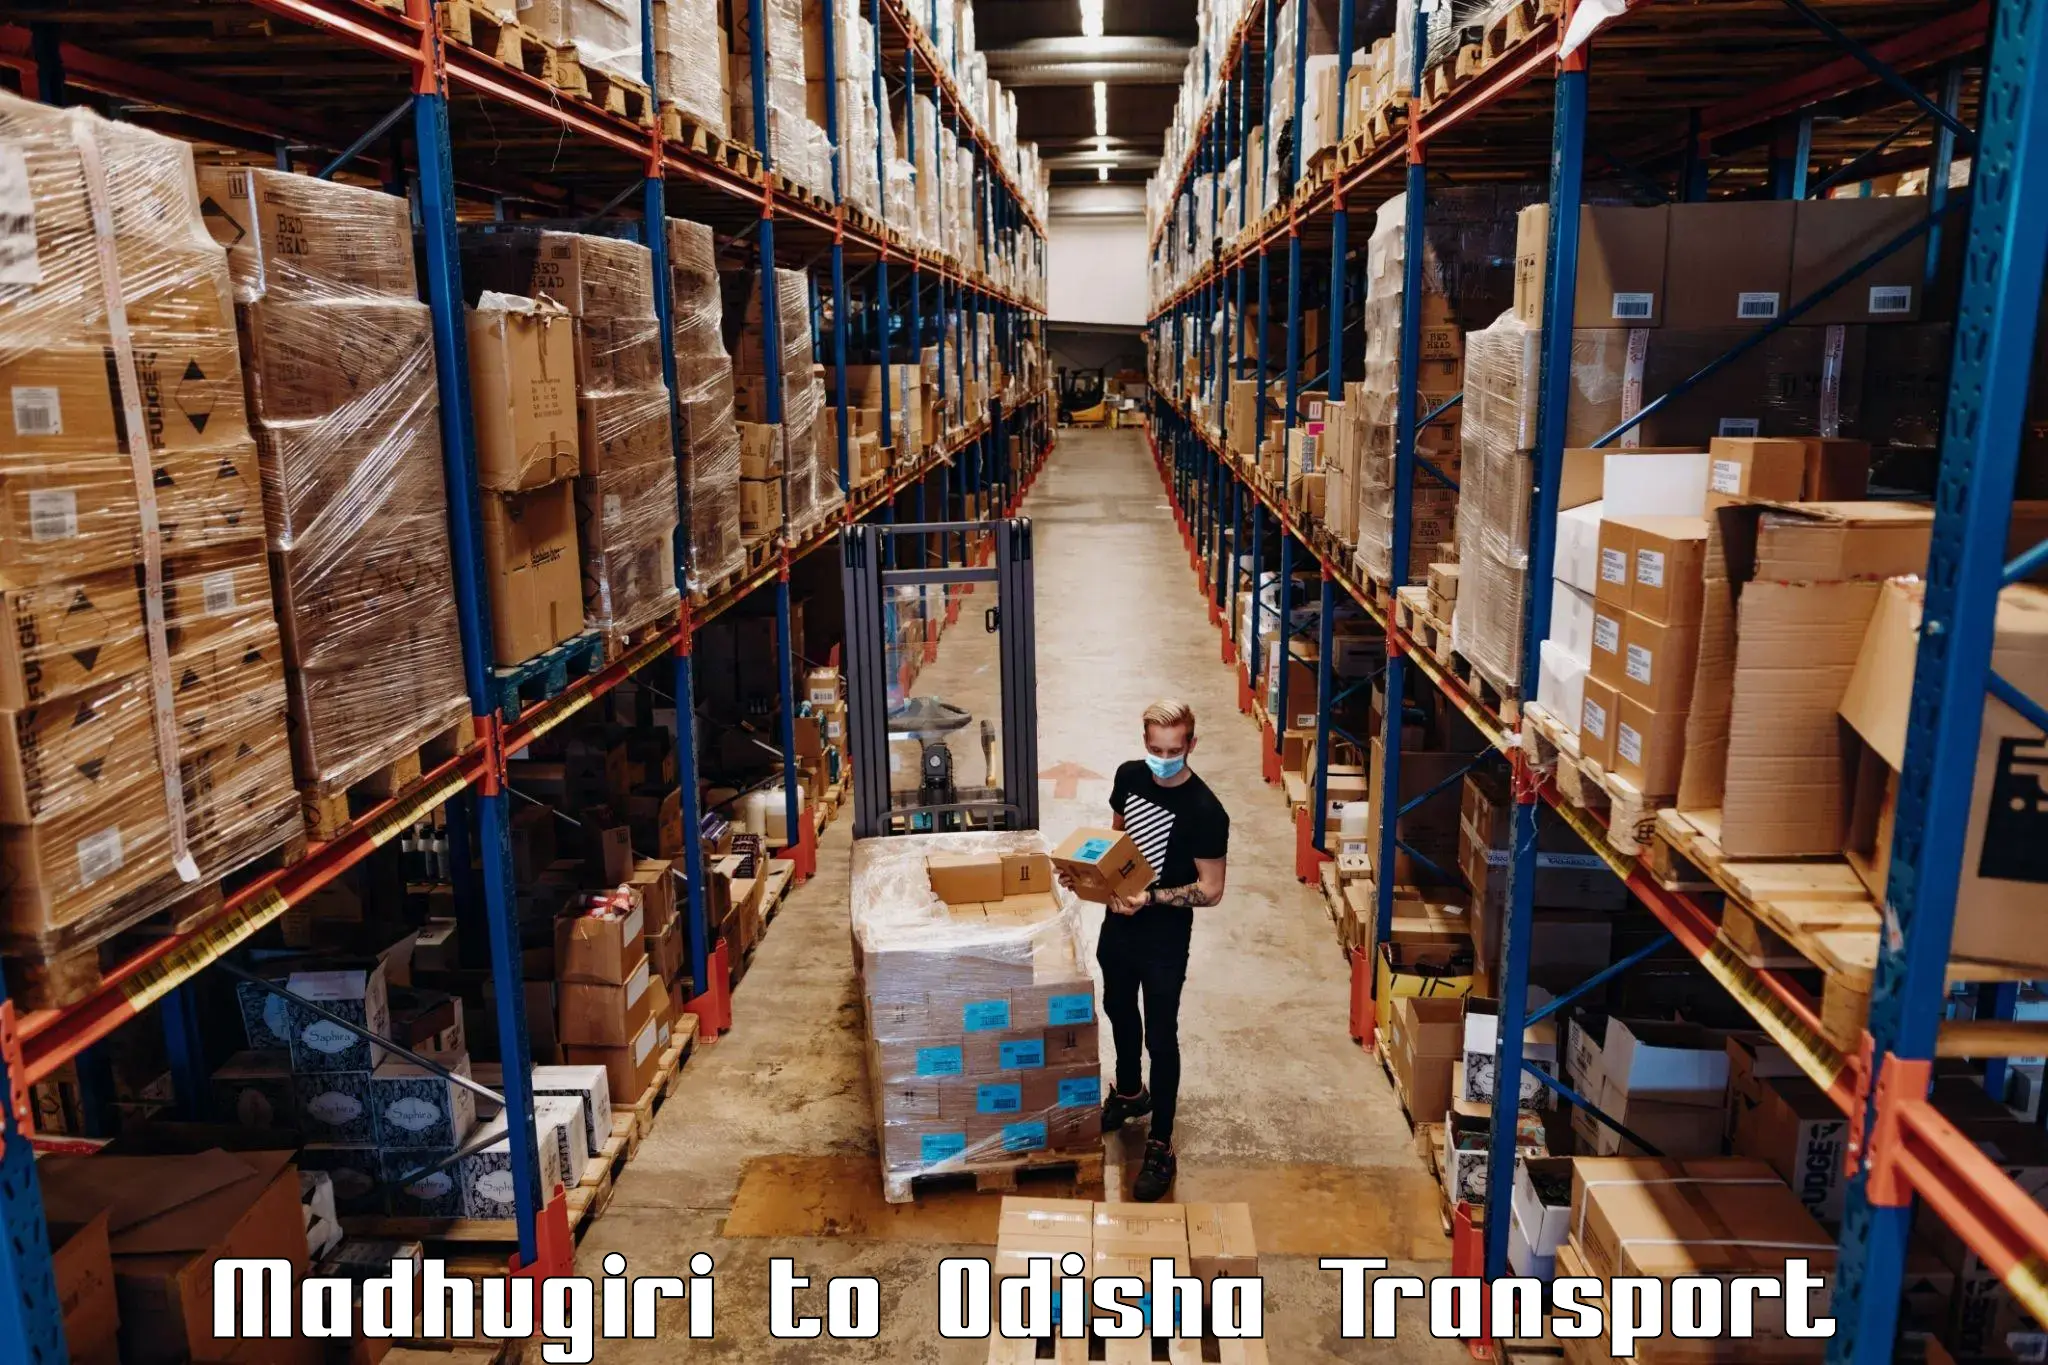 Container transportation services Madhugiri to Badagada